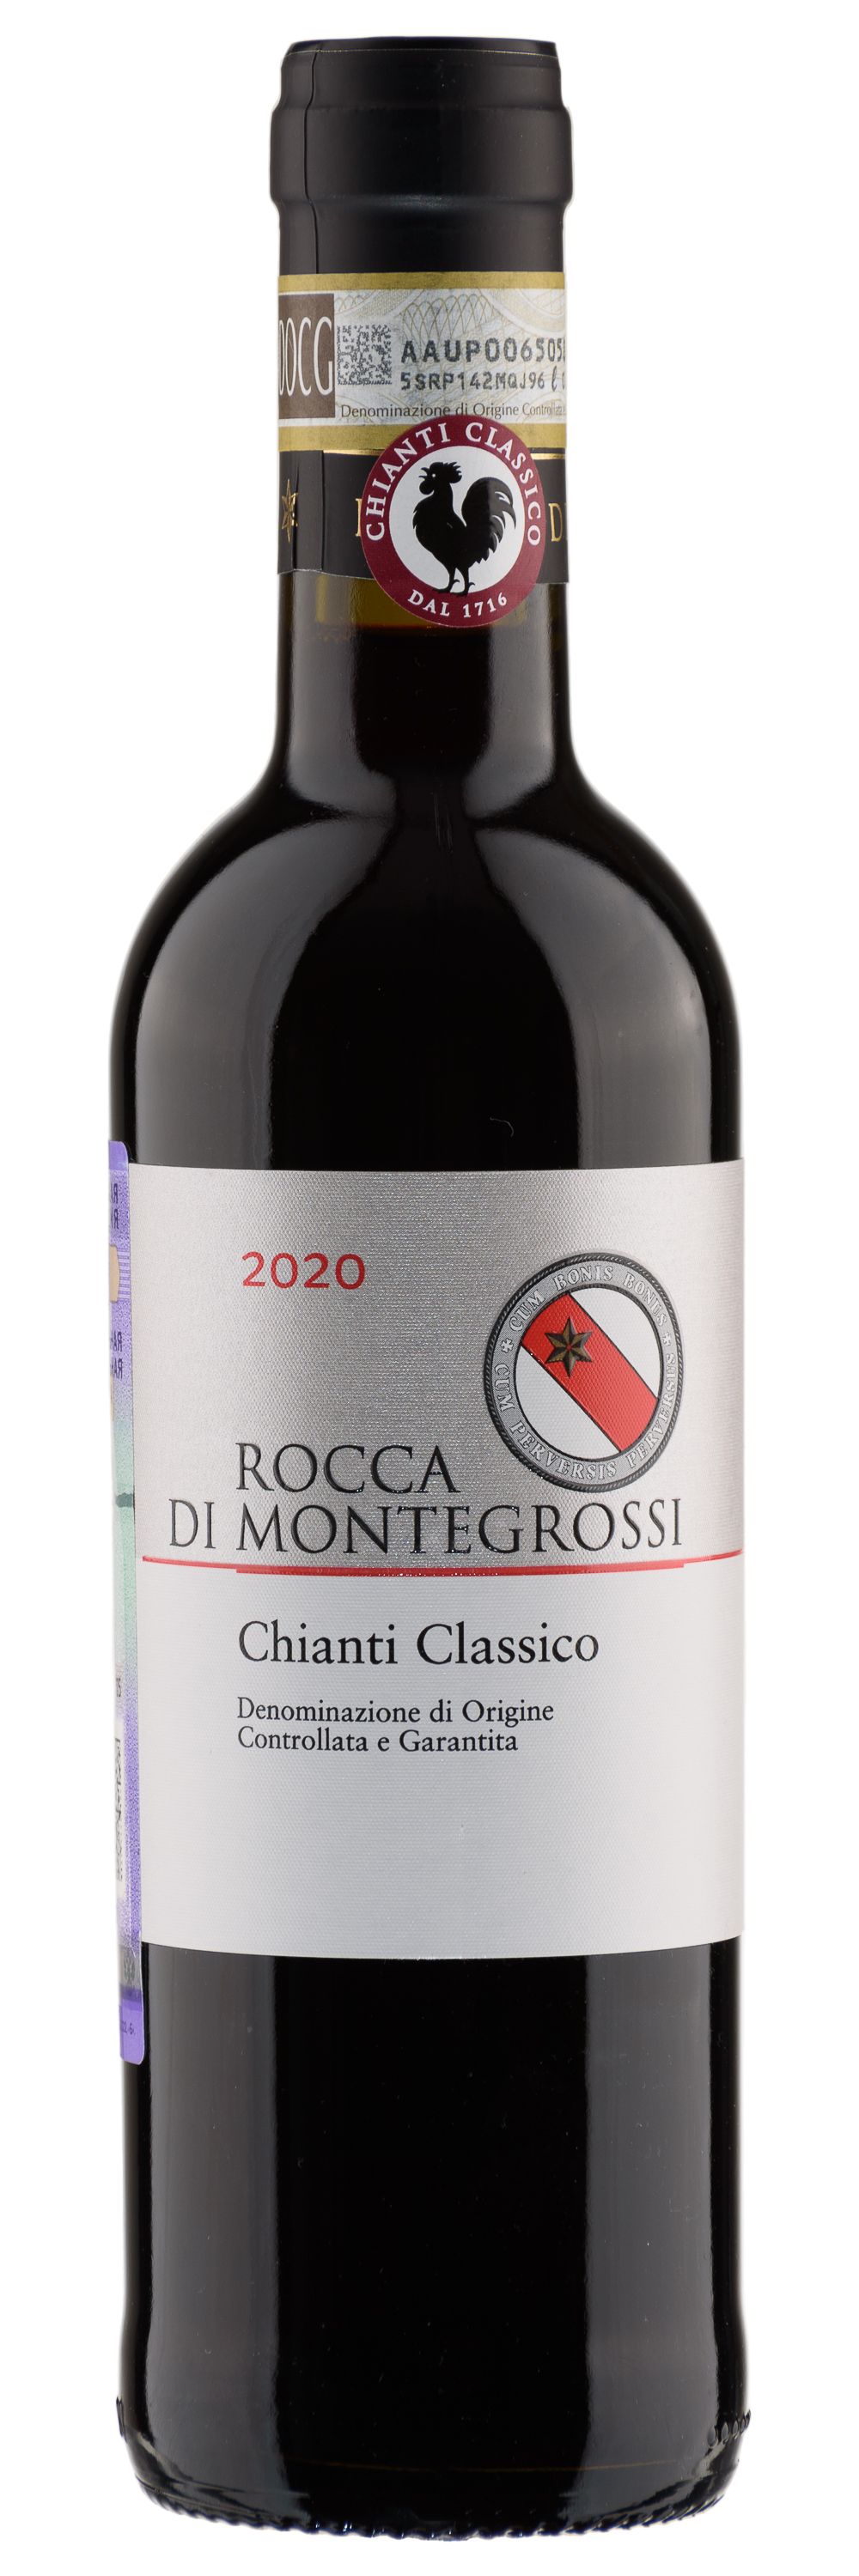 Rocca Di Montegrossi, Chianti Classico, 2020